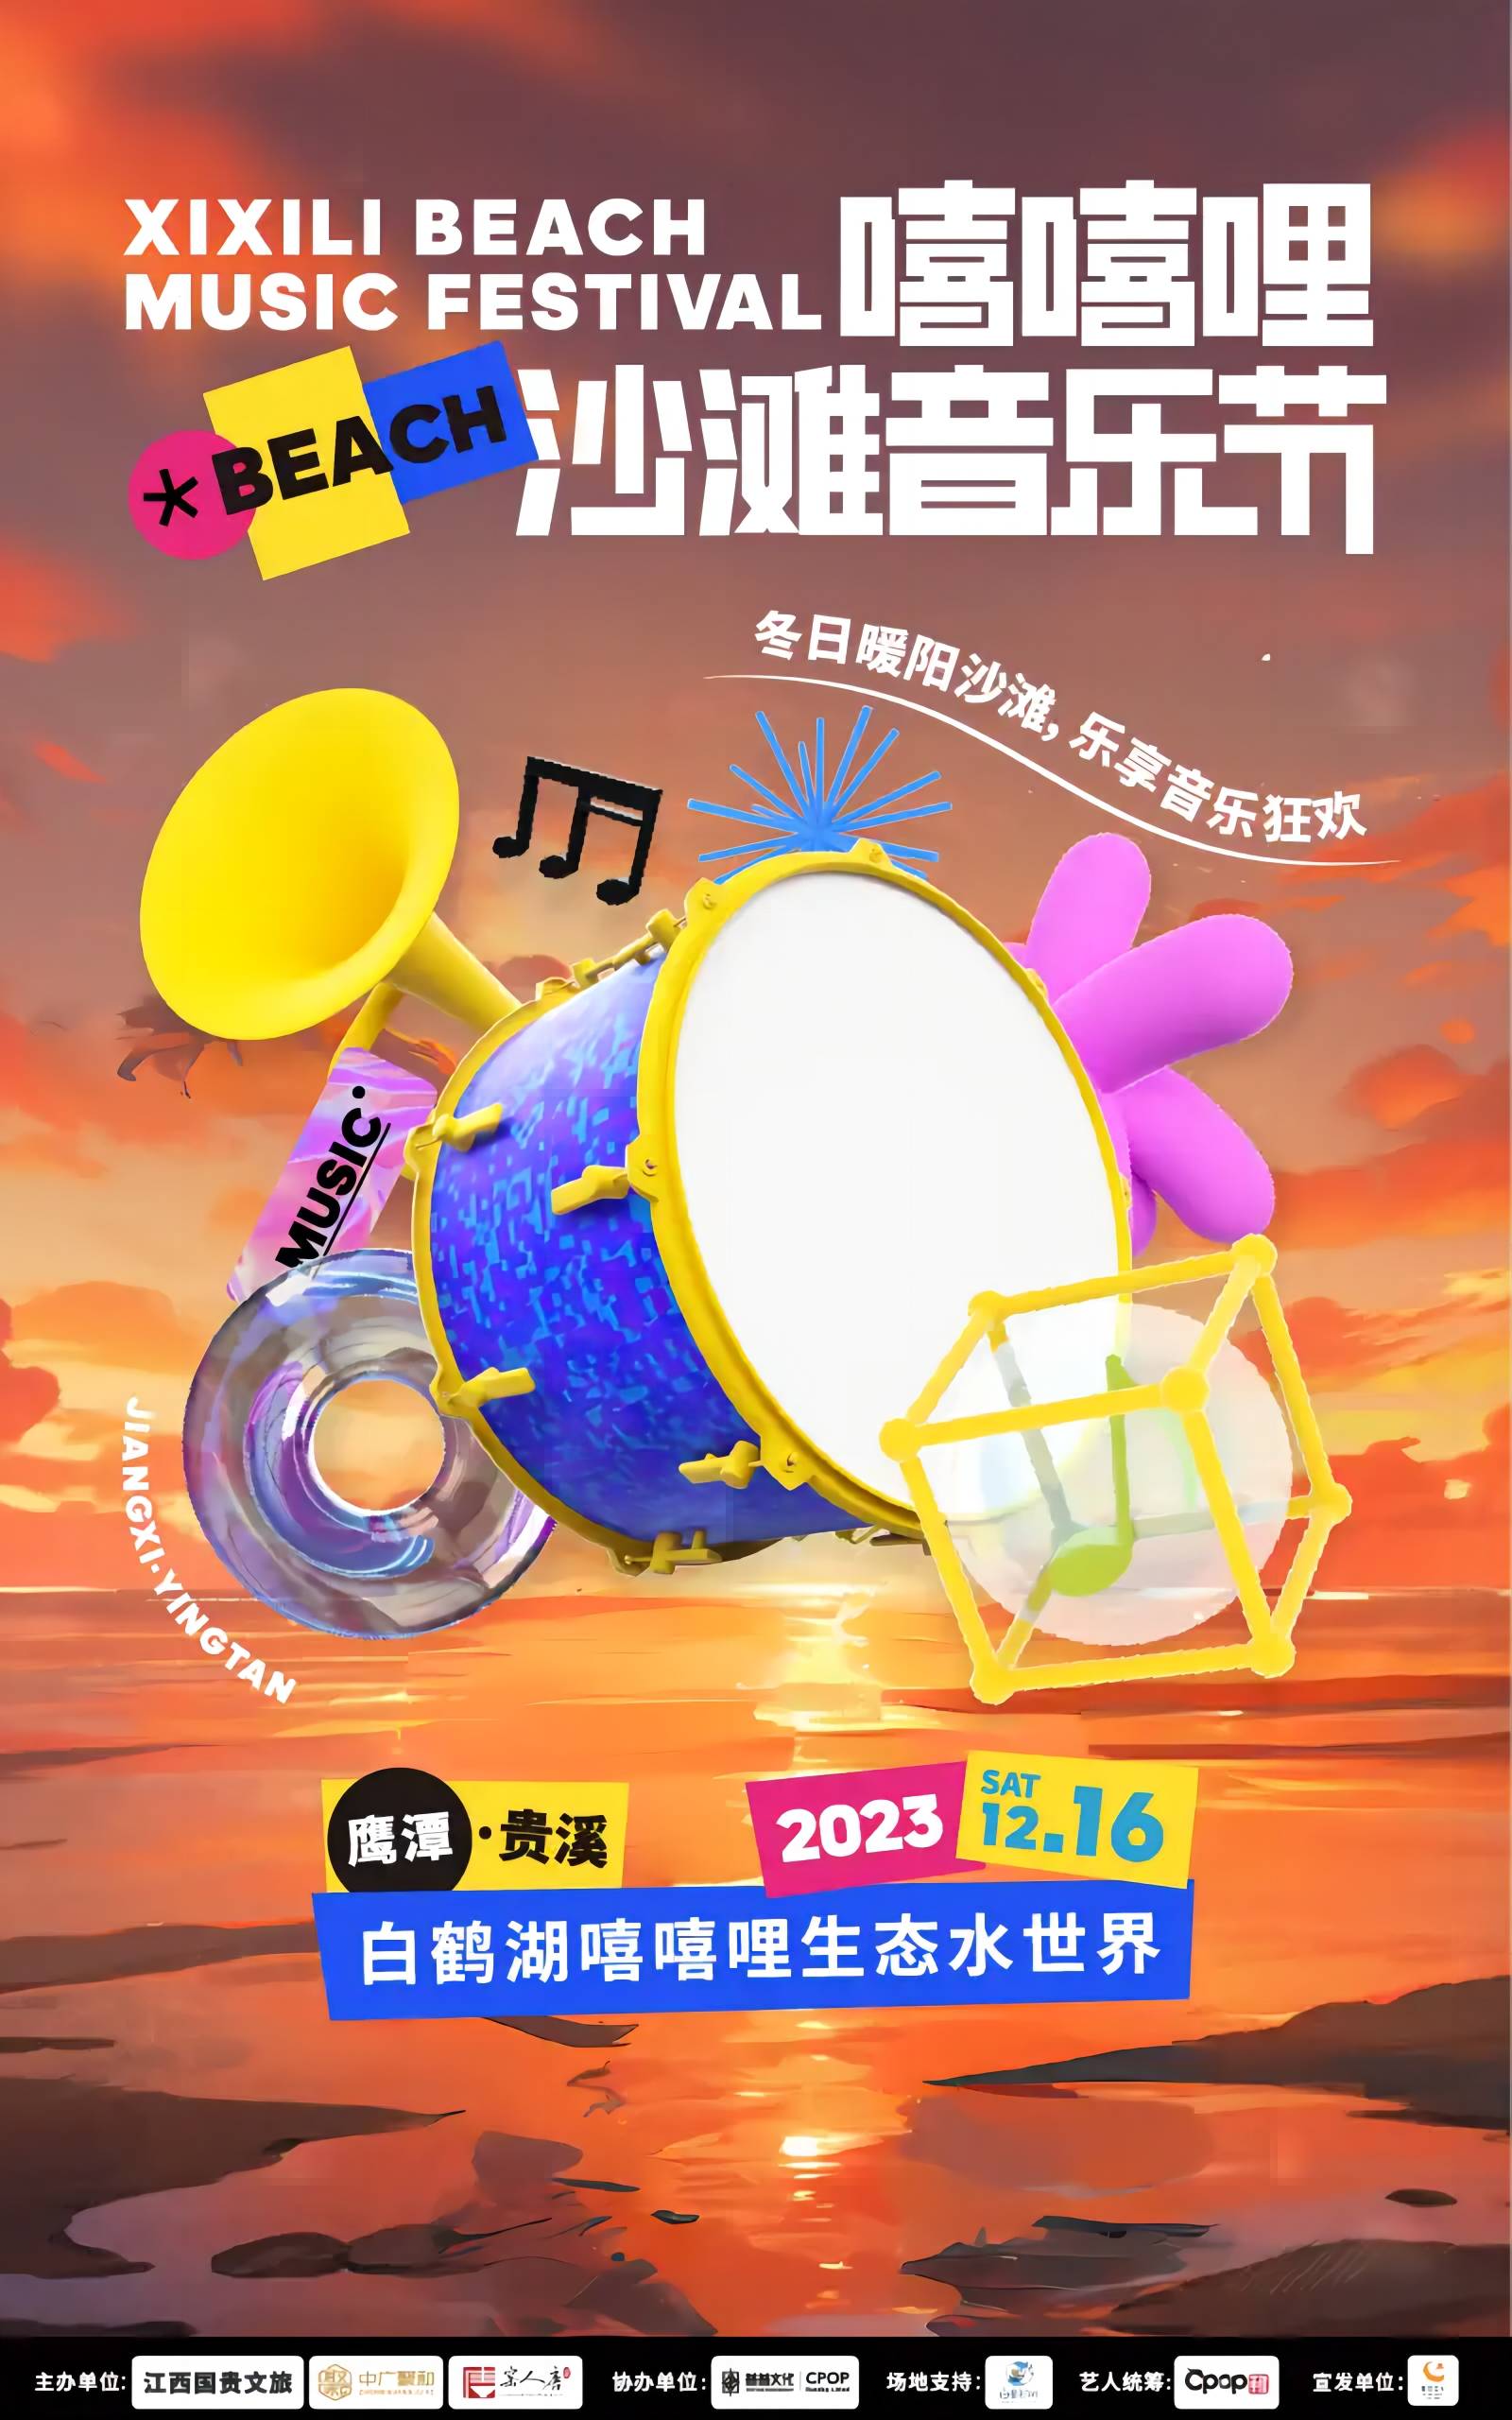 鹰潭嘻嘻哩沙滩音乐节